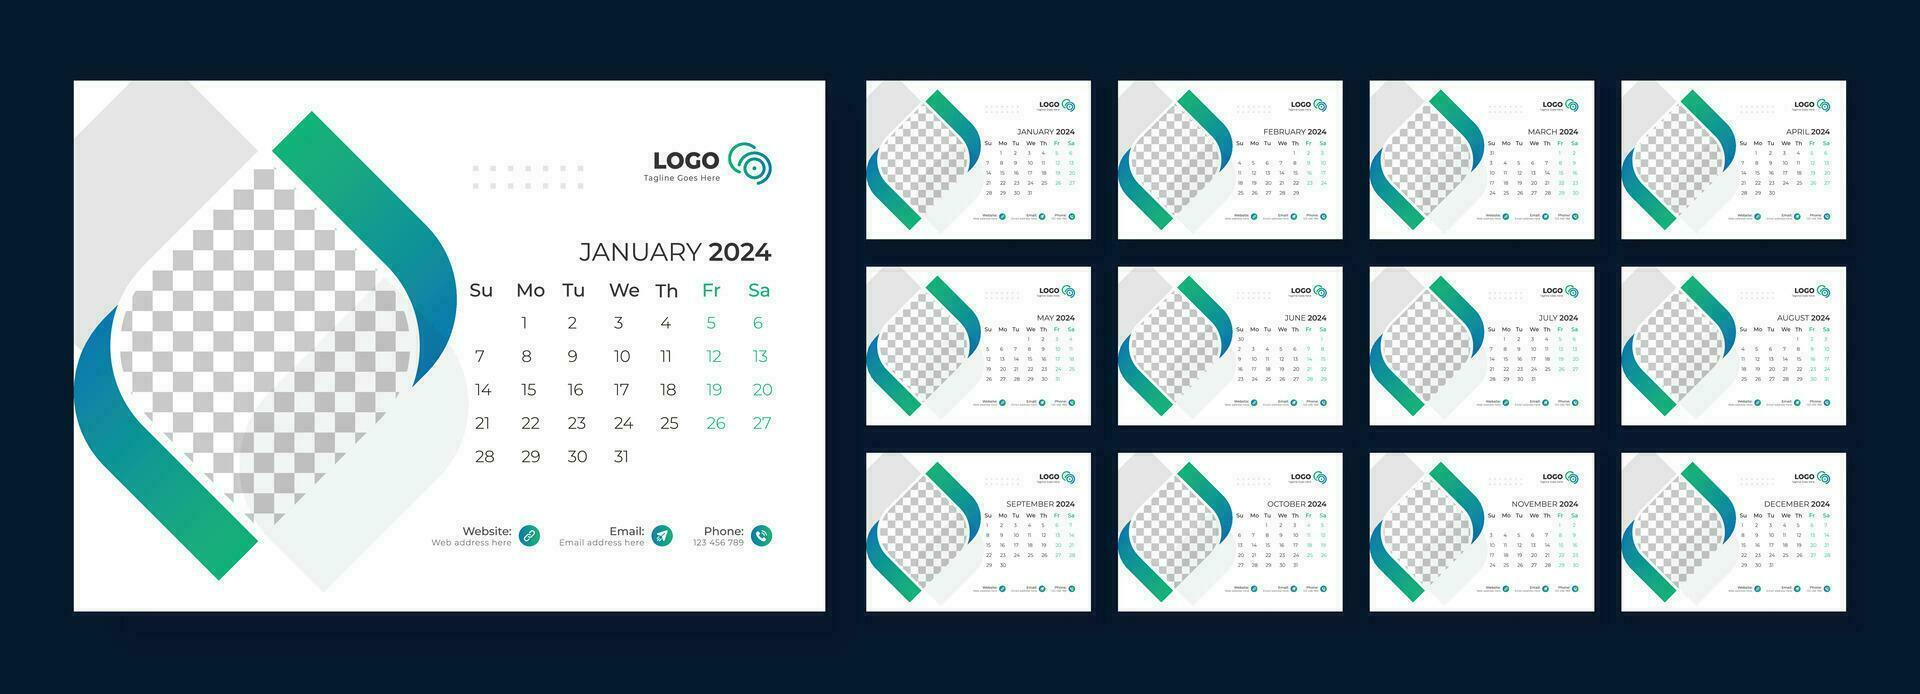 escritorio calendario 2024. modelo para anual calendario 2024. escritorio calendario calendario en un minimalista estilo. vector